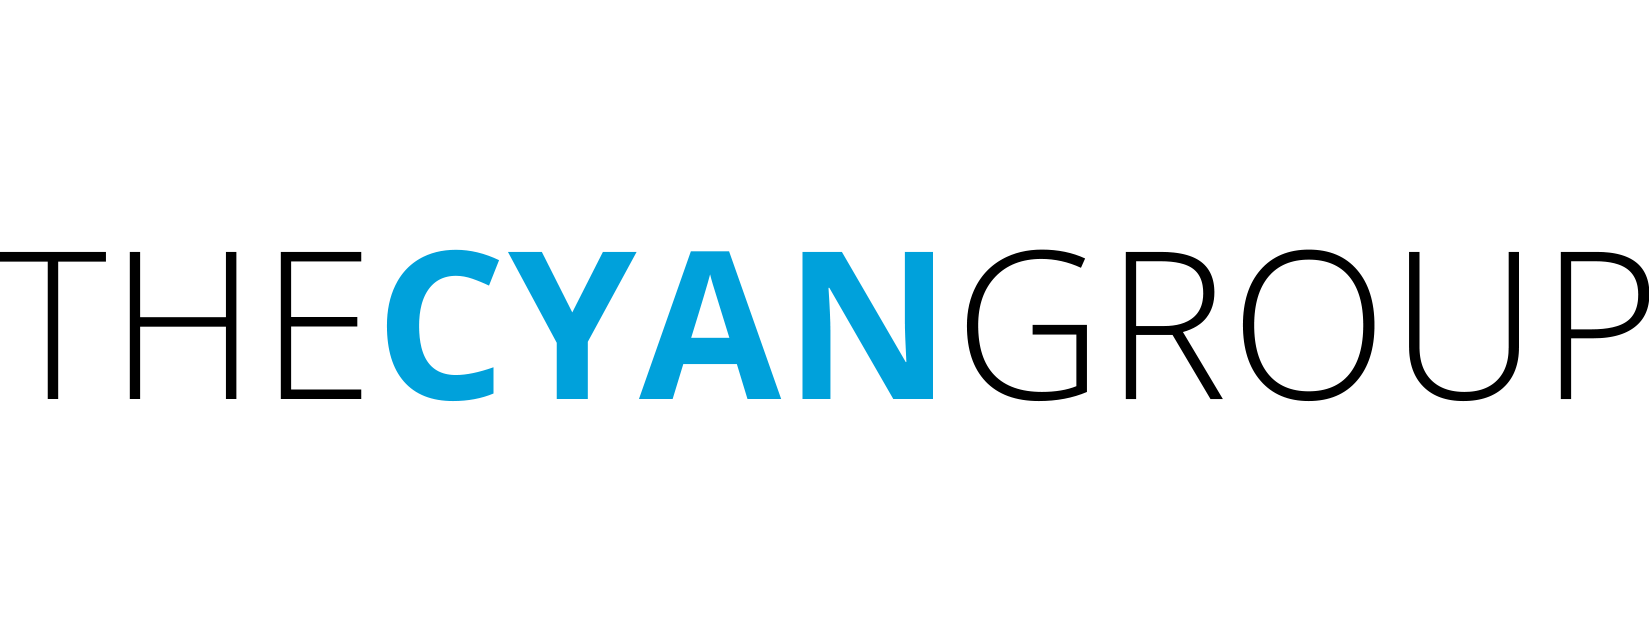 Cyan Logo